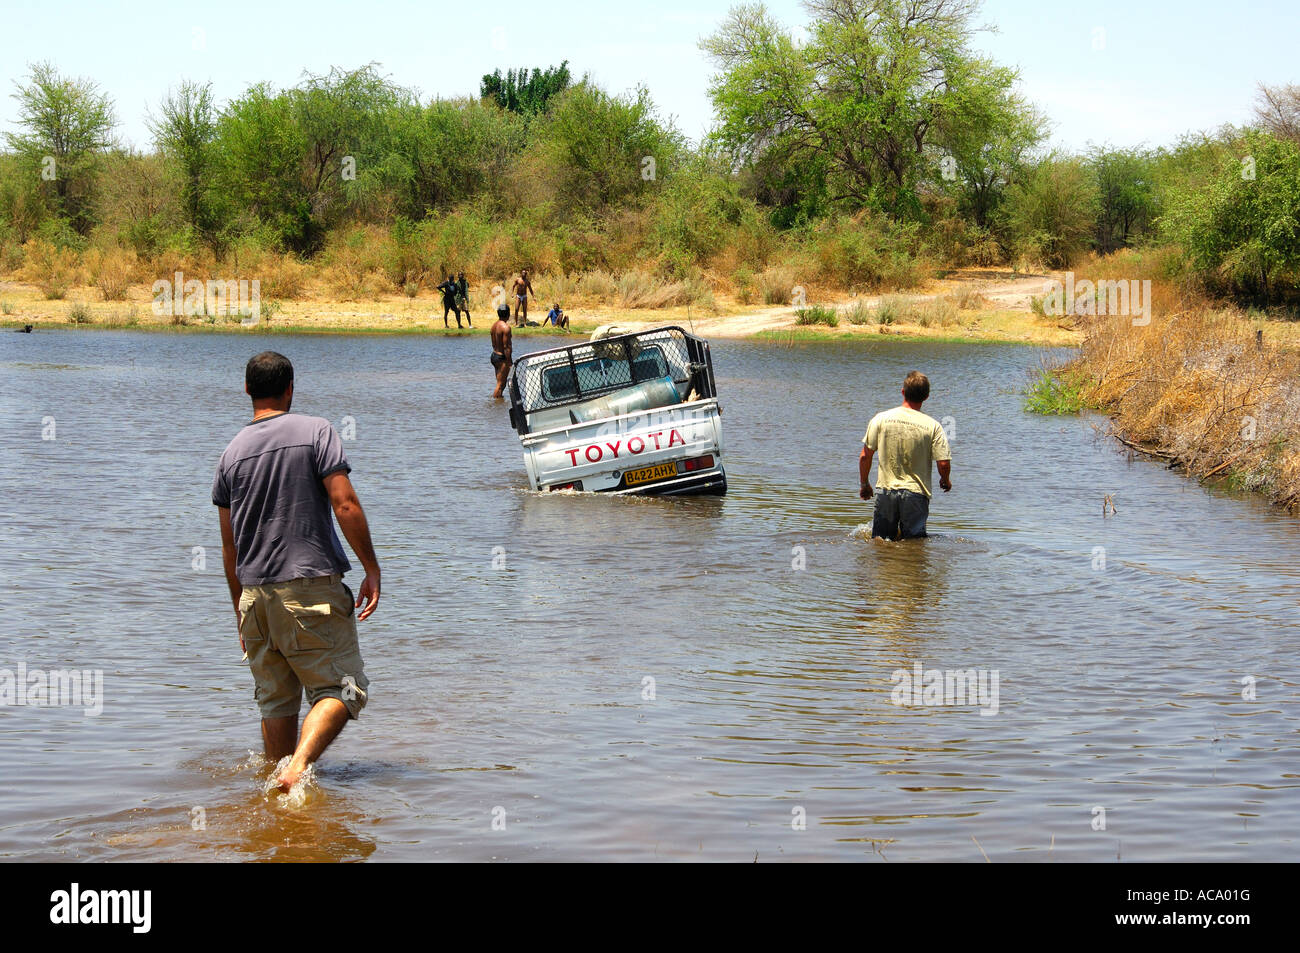 Quatre roues motrices jeep booged vers le bas tout en traversant une rivière, de l'aide est venue, Botswana, Africa Banque D'Images